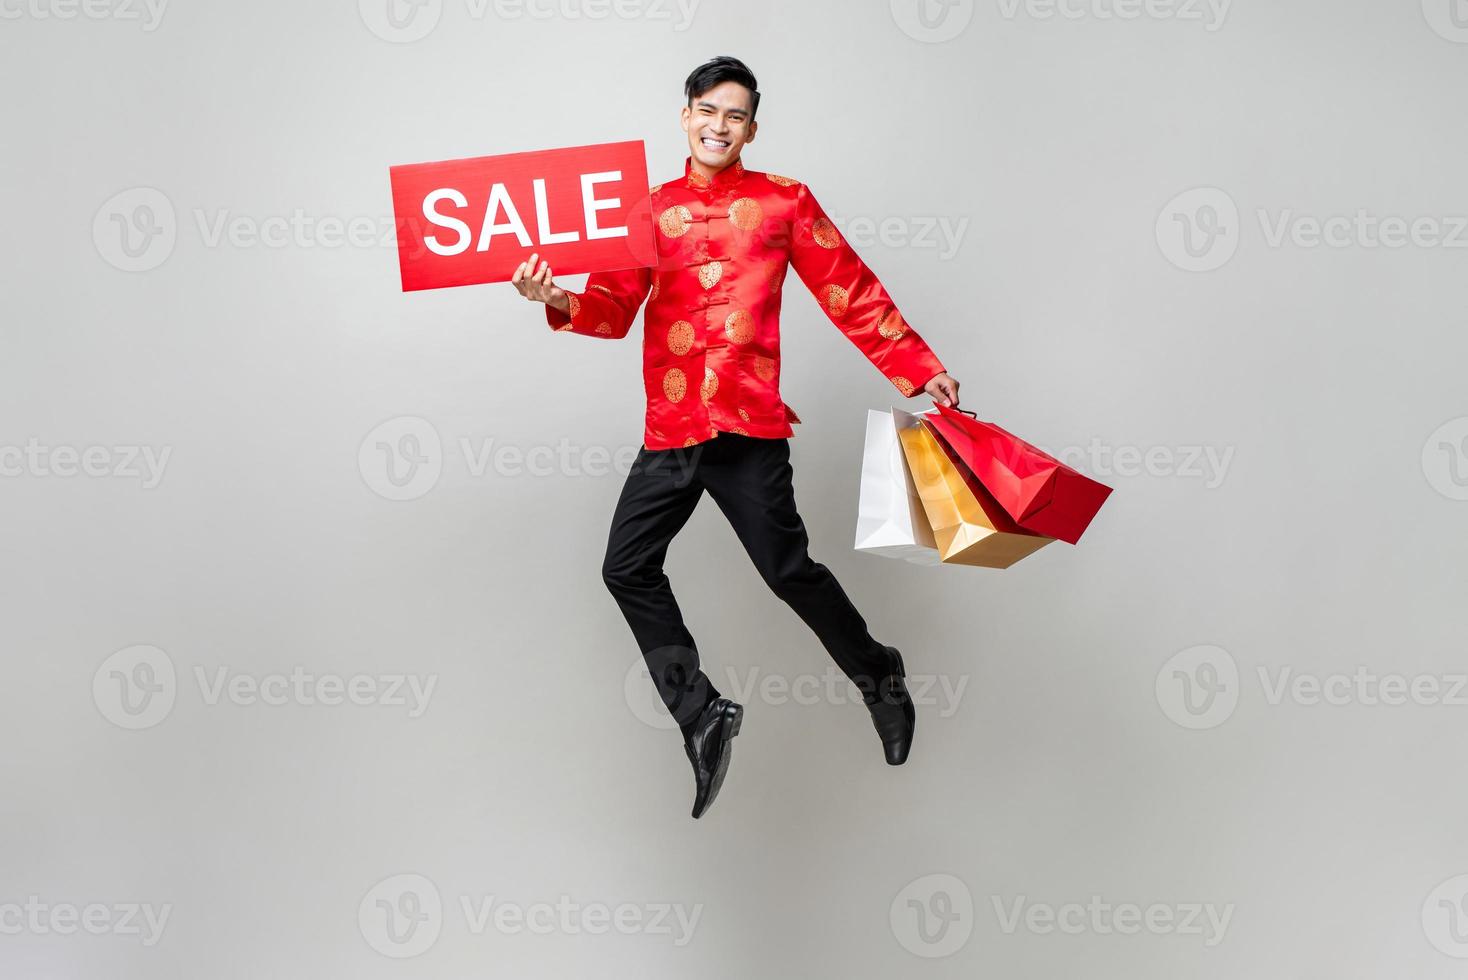 verraste aziatische man in traditionele klederdracht met tassen en rood verkoopbord die op geïsoleerde lichtgrijze achtergrond springt voor Chinees nieuwjaarswinkelconcept foto